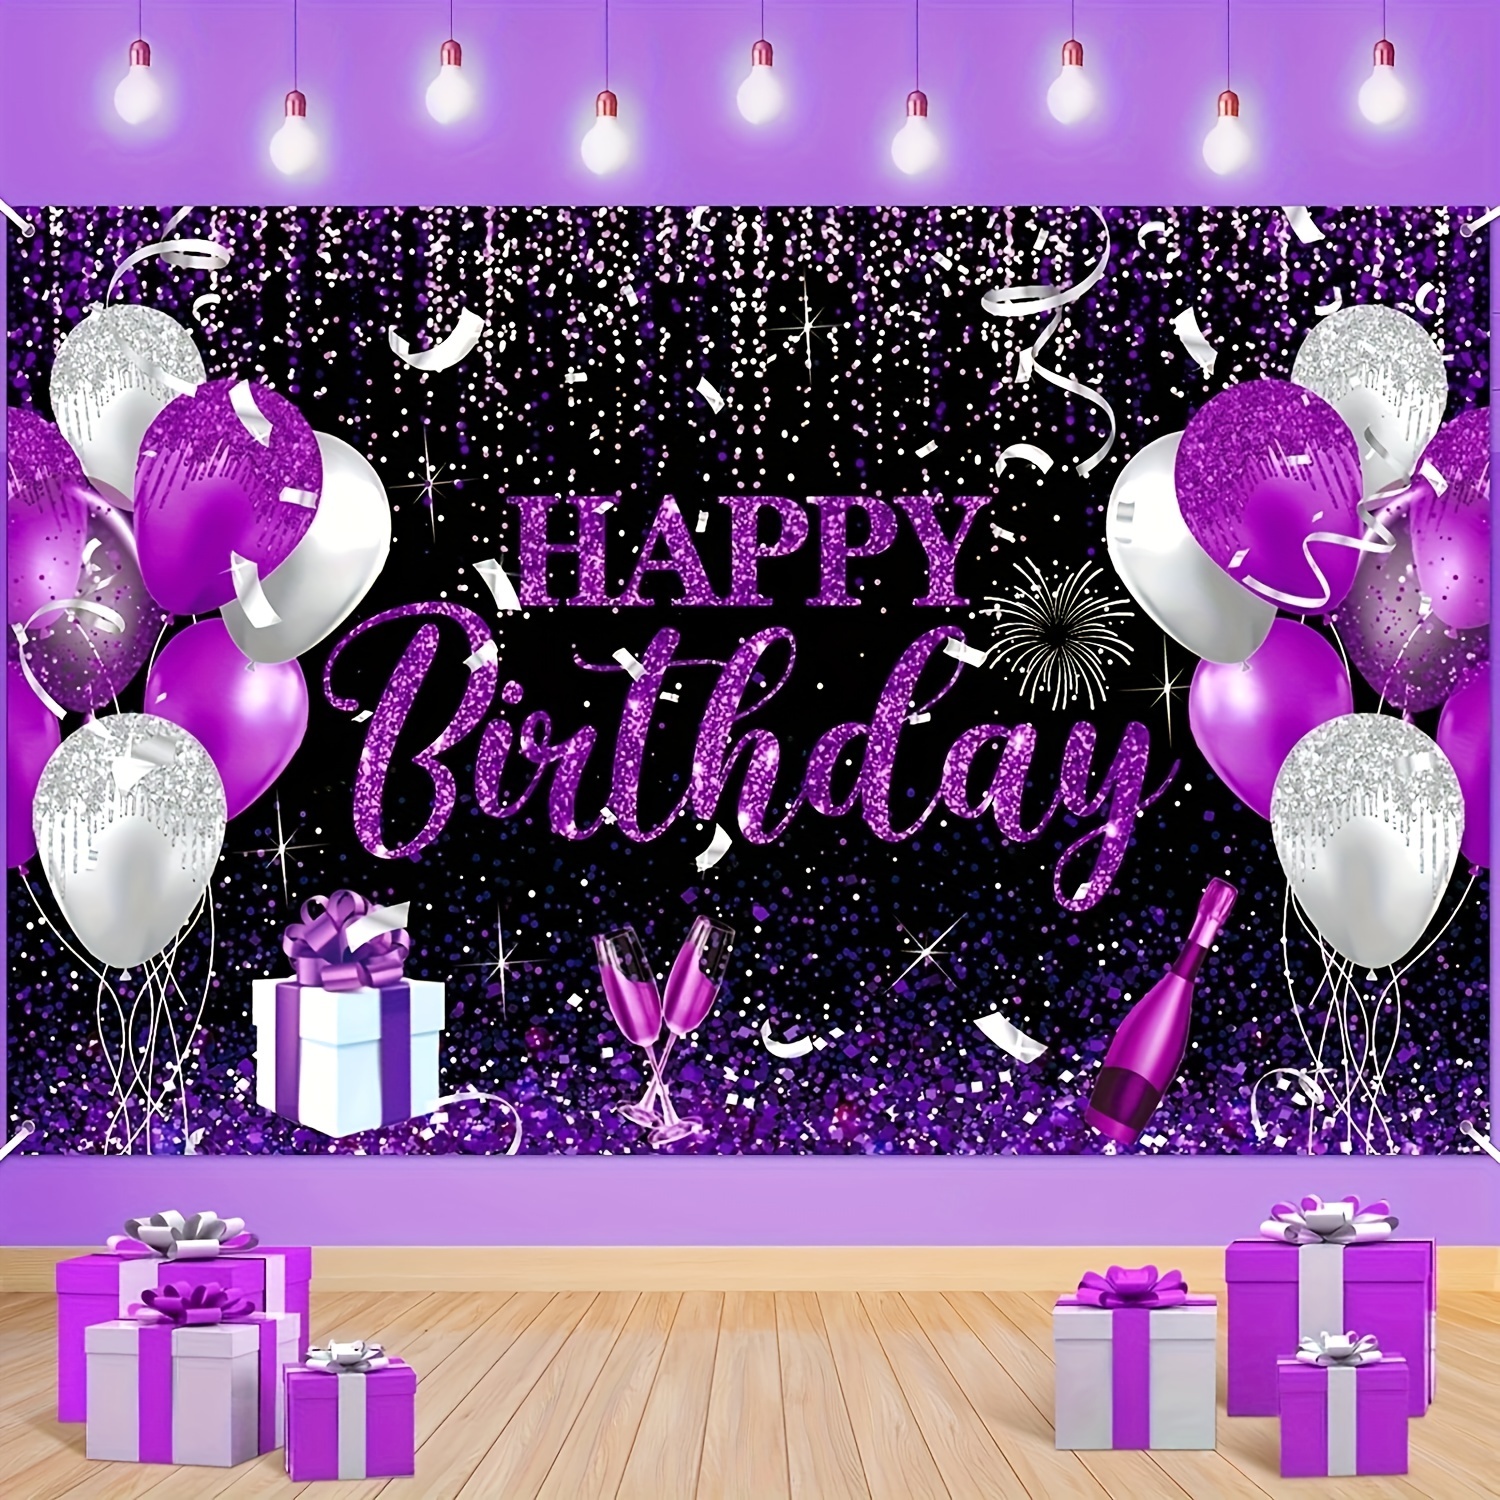 Article de décoration violet pour fête et anniversaire